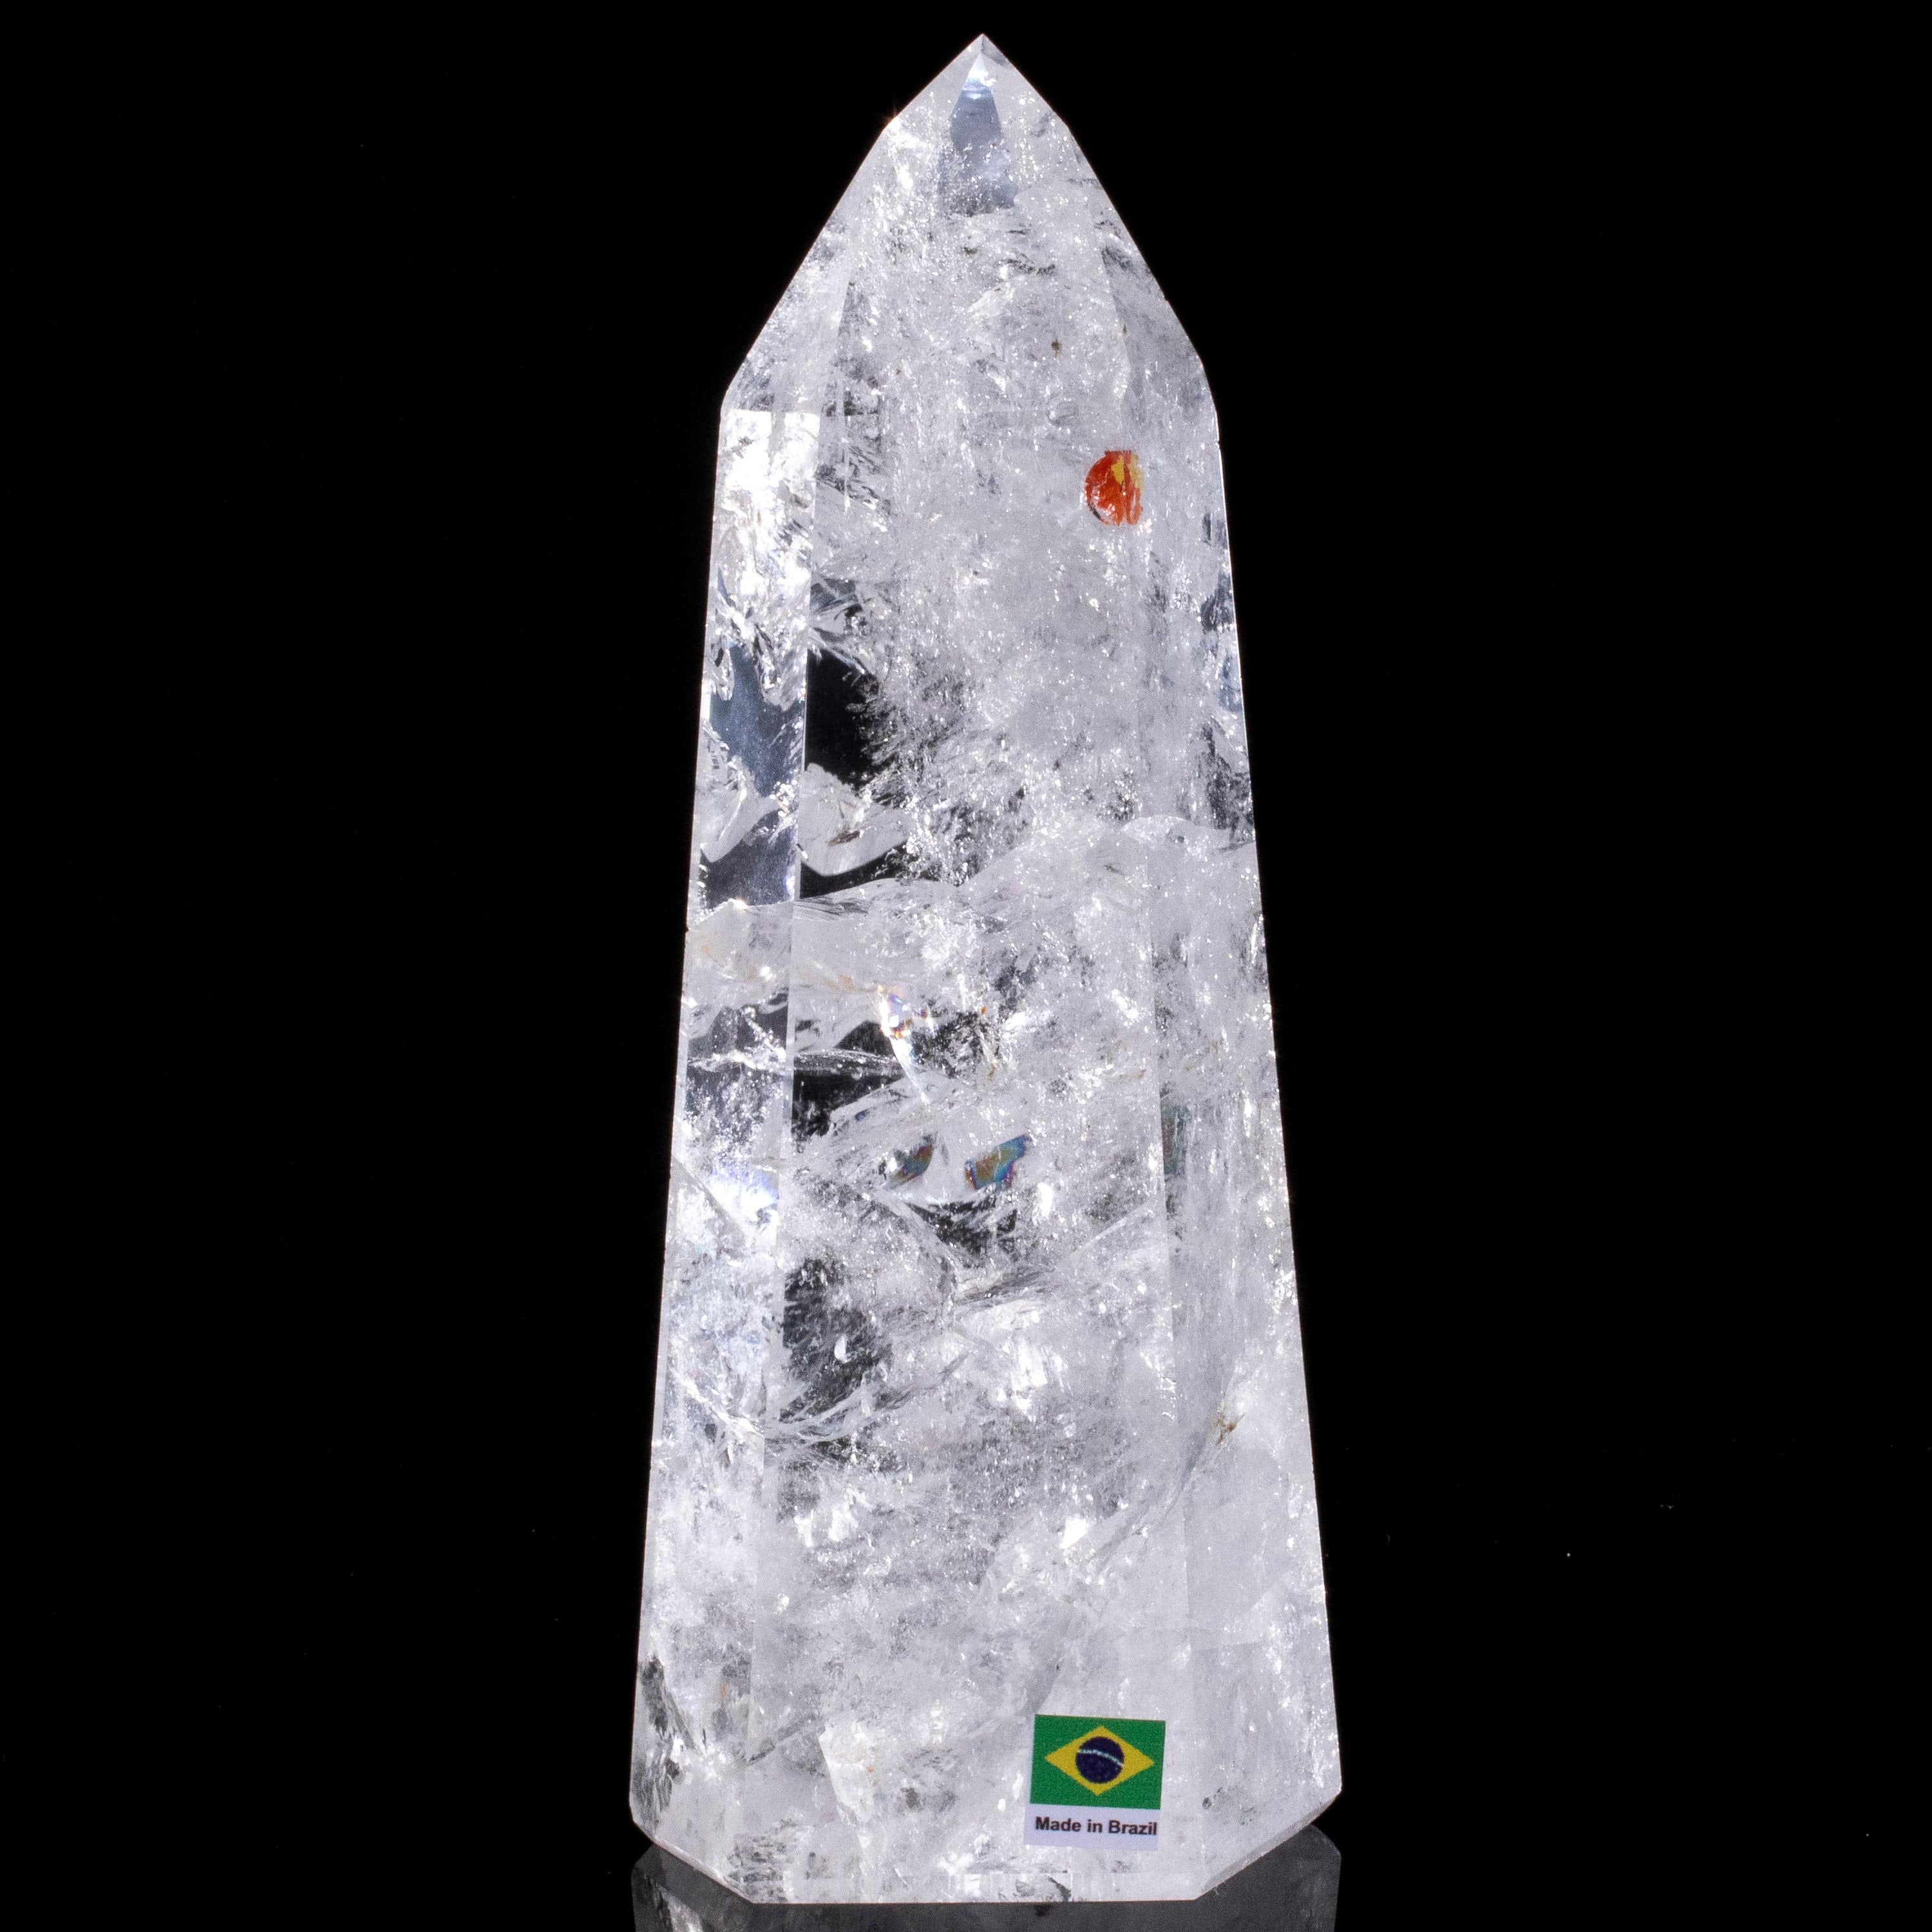 Kalifano Quartz Natural Quartz Obelisk from Brazil - 8" / 1,184 grams QZ1500.015